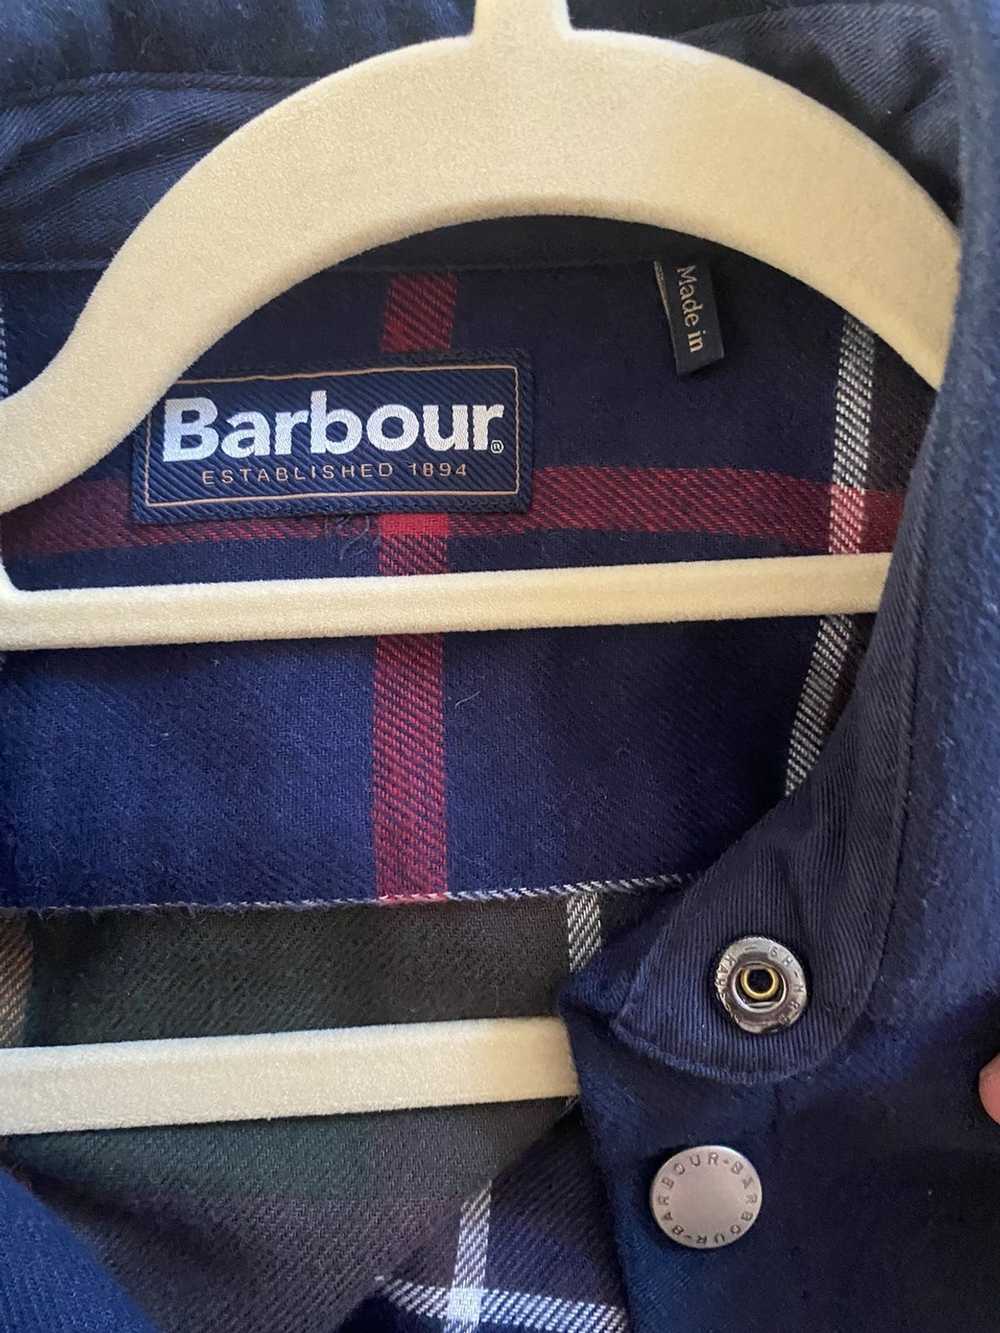 Barbour Barbour Cotton Shirt Jacket - image 4